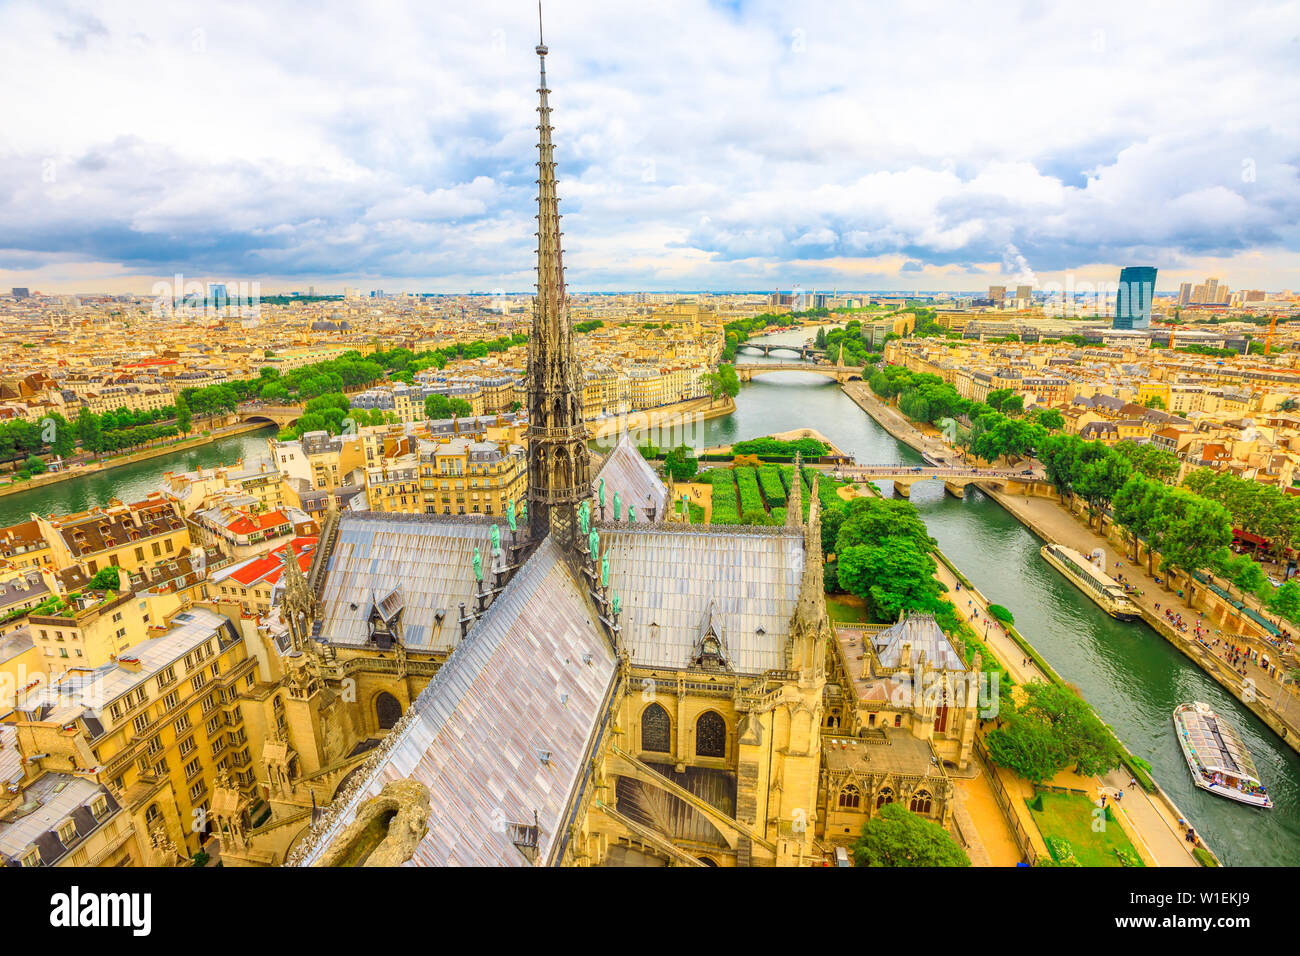 Dettaglio del campanile della cattedrale di Notre Dame (Nostra Signora di Parigi) con statue e dello skyline della città di Parigi, Francia, Europa Foto Stock